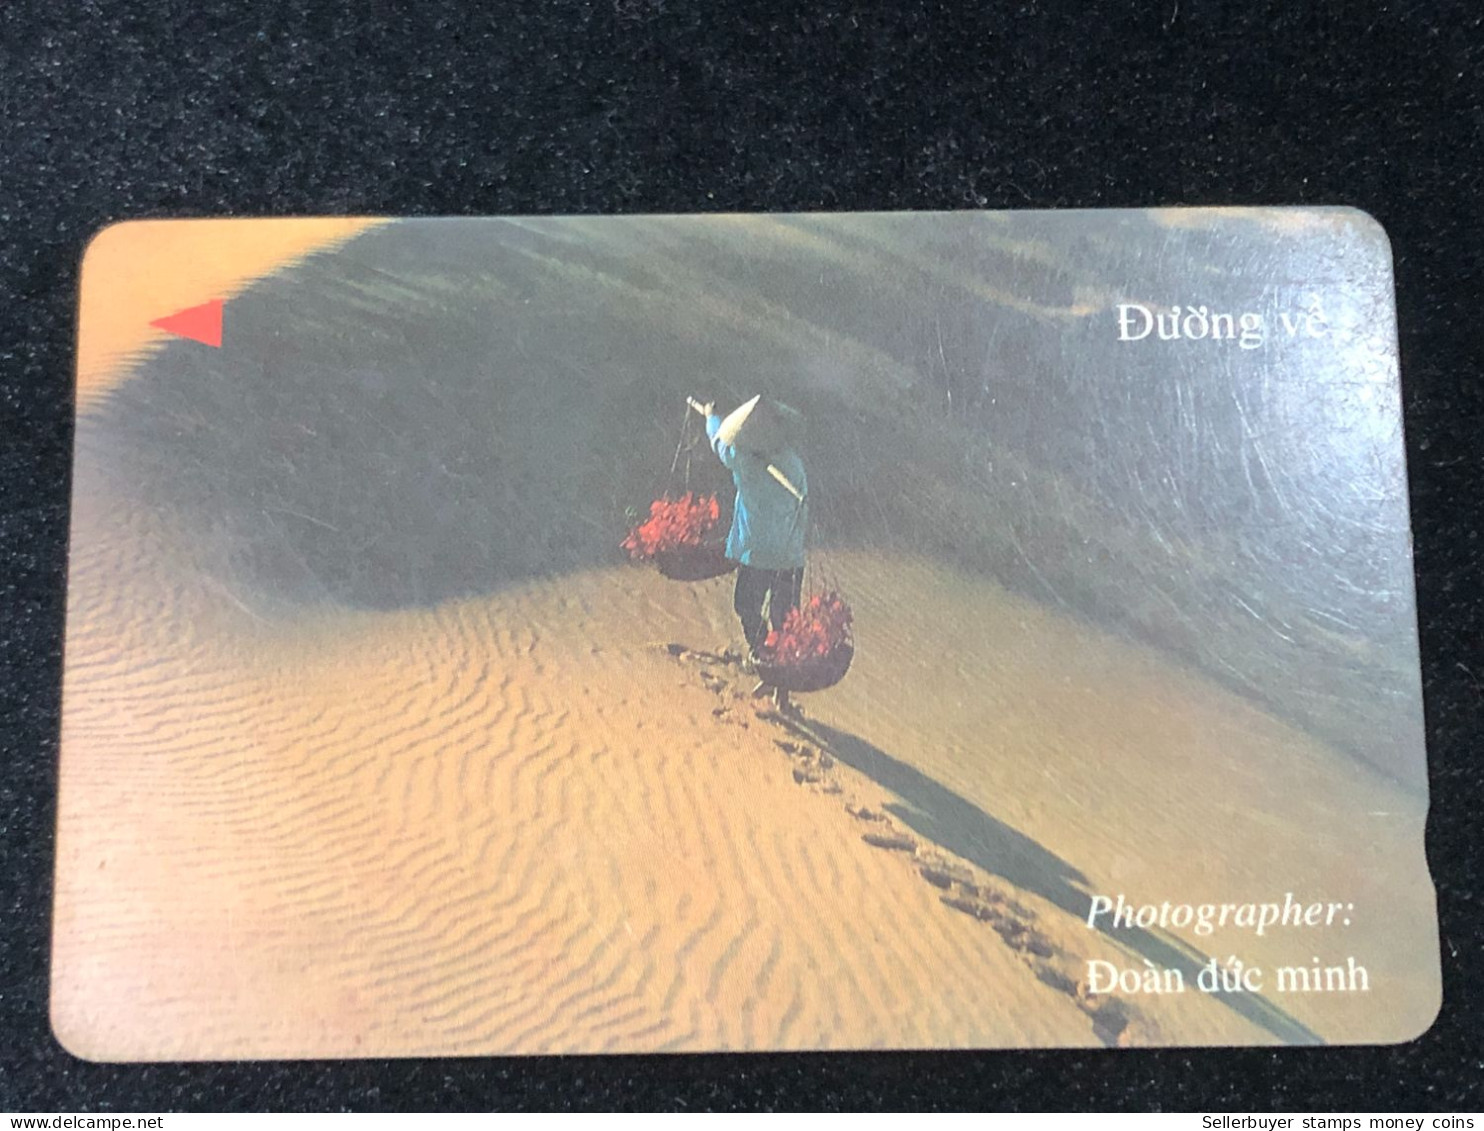 Card Phonekad Vietnam(the Way Home- 60 000dong-1997)-1pcs - Vietnam